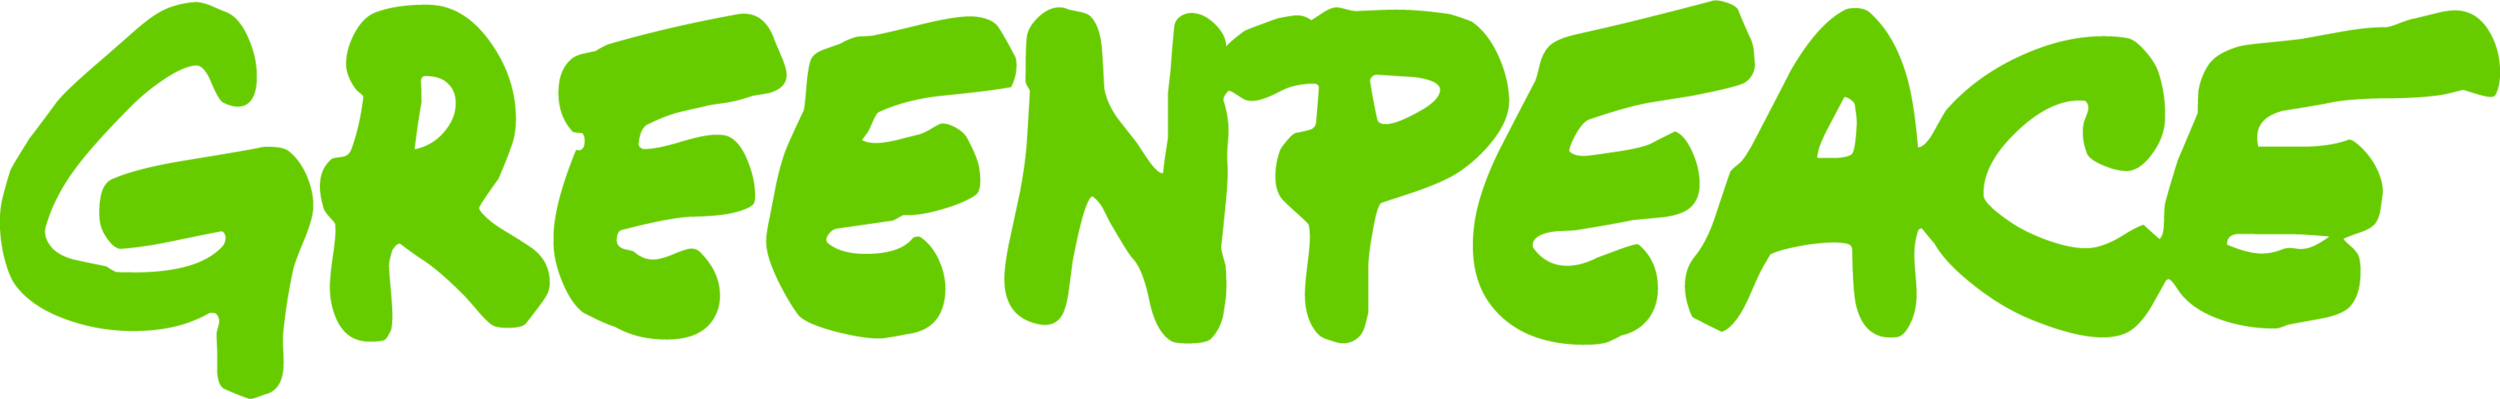 Logo-Greenpeace.png